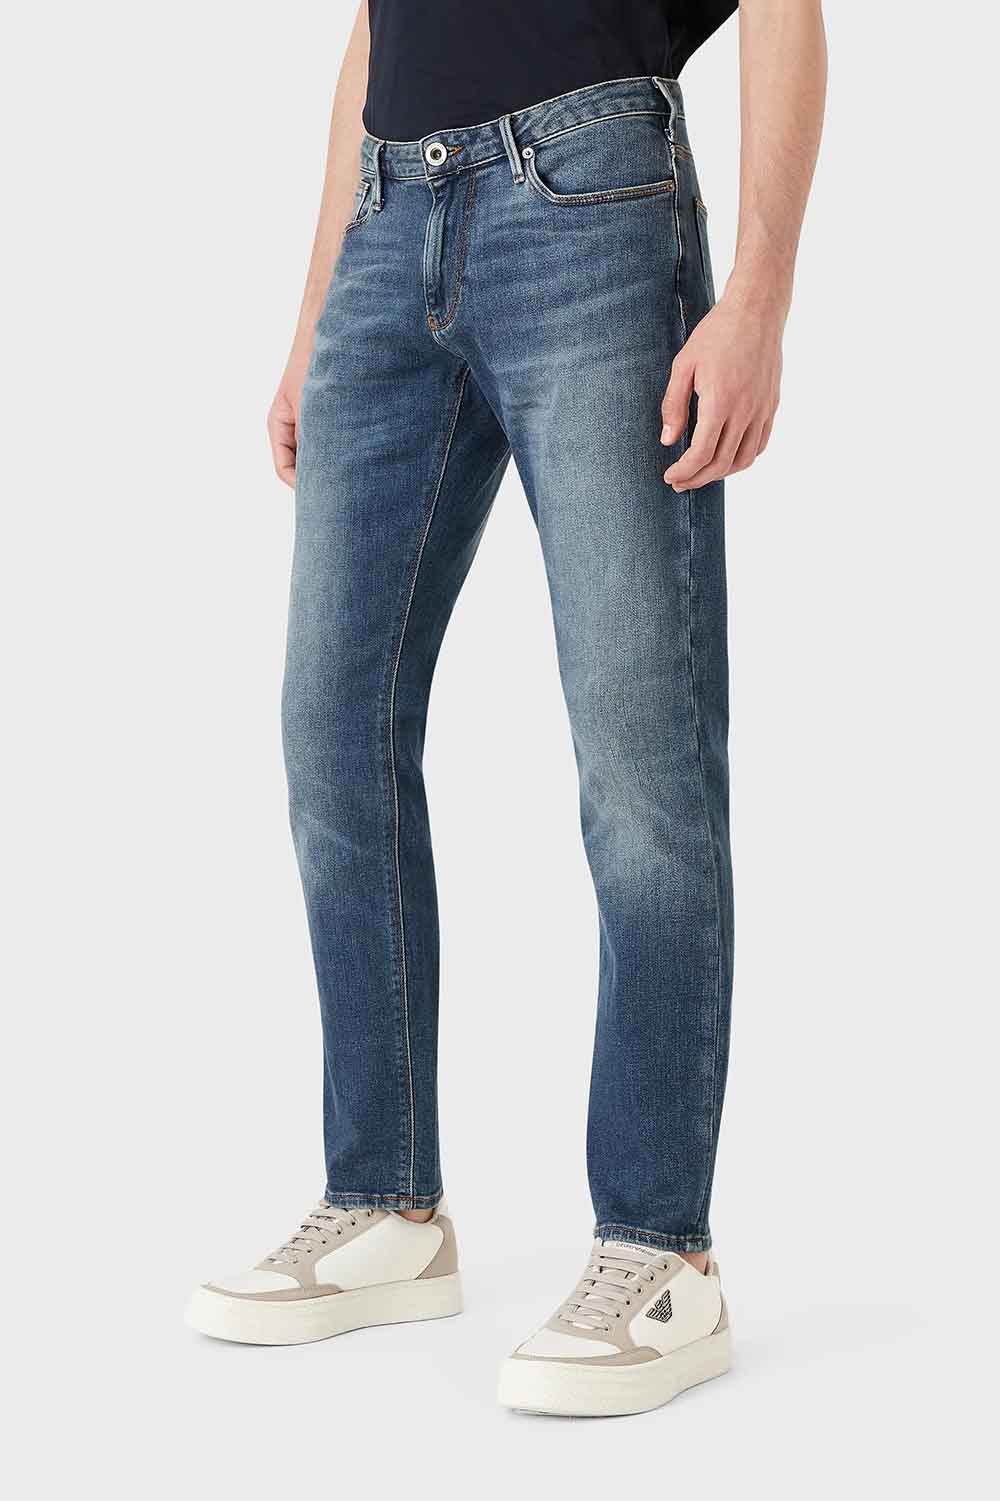 Pantalón de la marca Emporio Armani Jeans